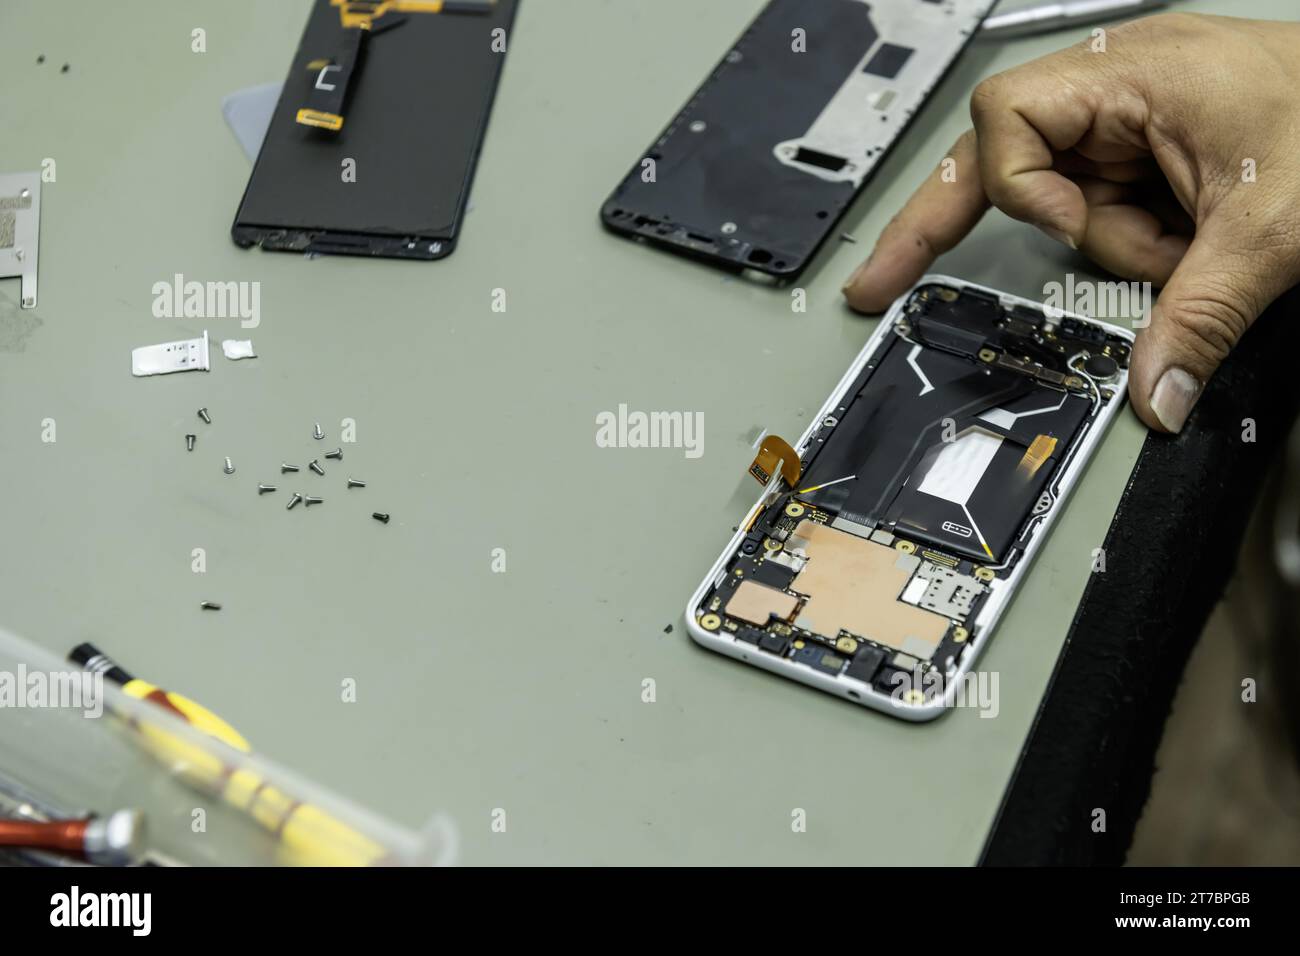 Un technicien a un téléphone ouvert réparateur sur sa table de travail avec une surface contre les interférences électromagnétiques Banque D'Images